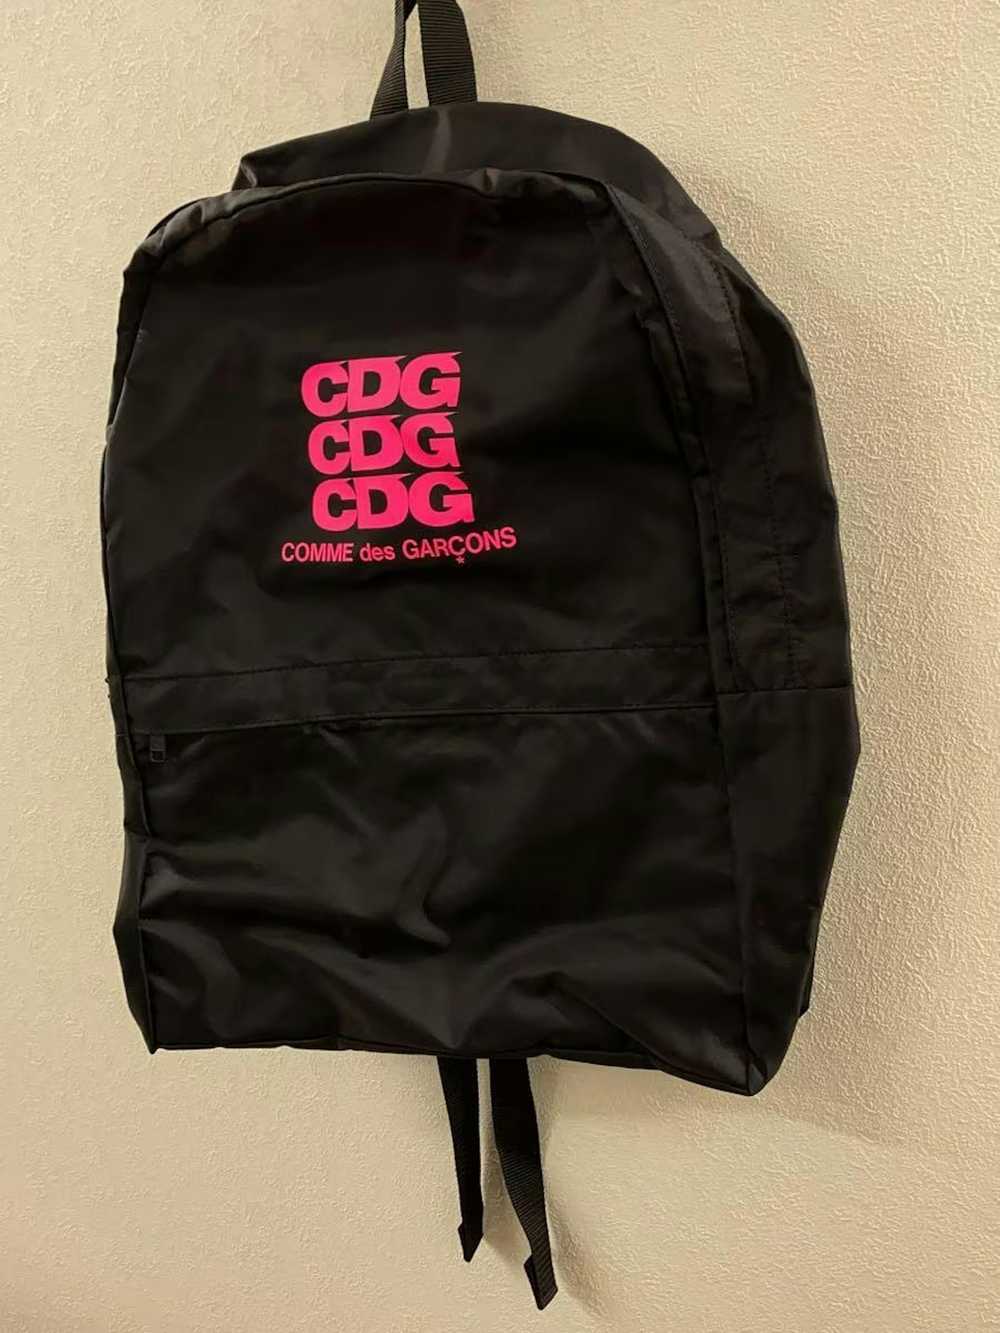 Comme des Garcons CDG Logo Backpack - image 2